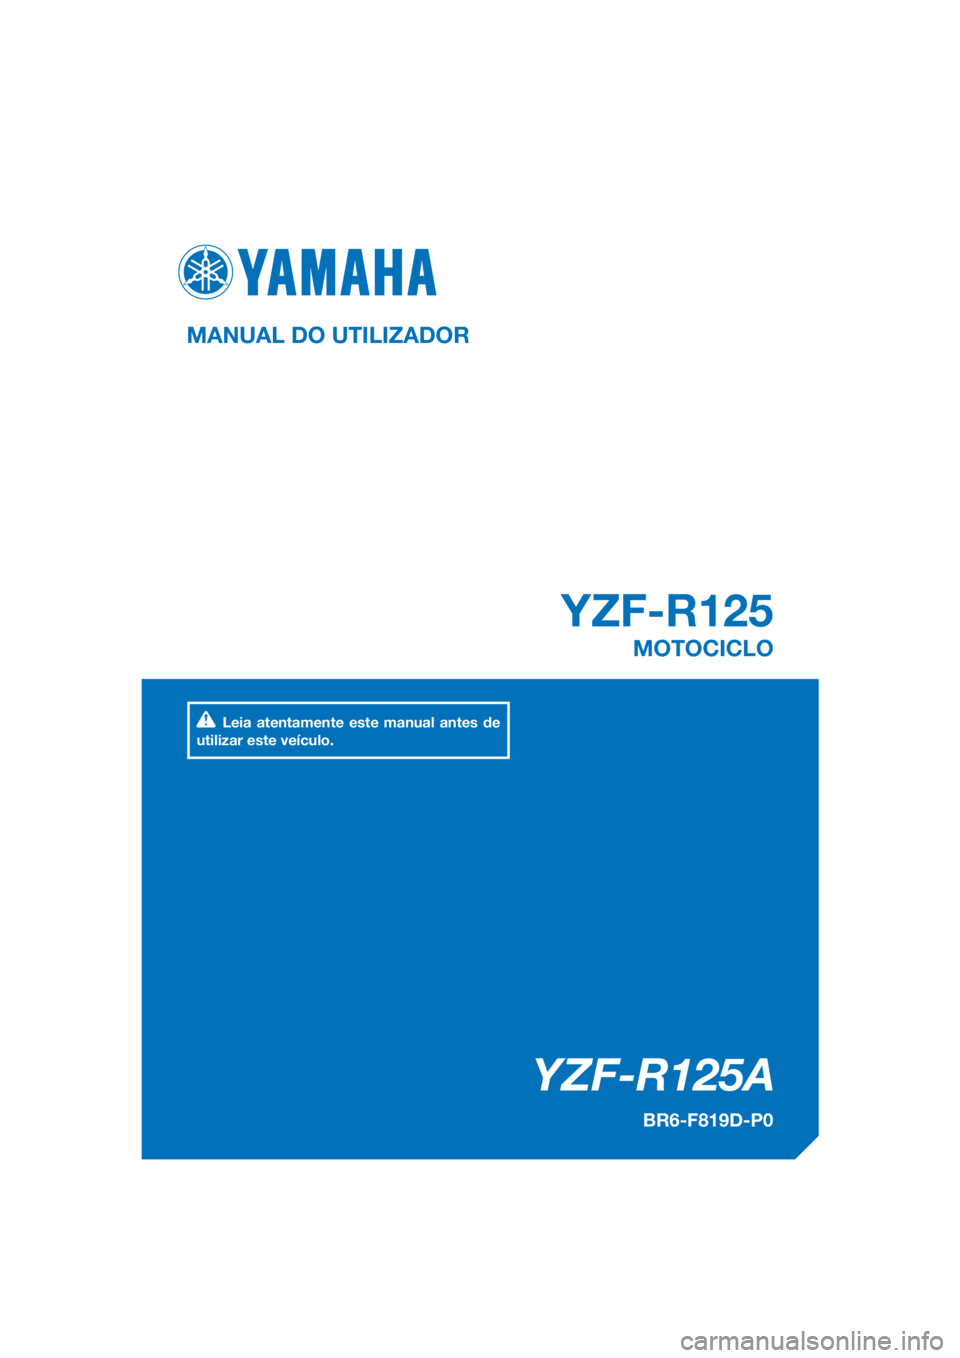 YAMAHA YZF-R125 2017  Manual de utilização (in Portuguese) PANTONE285C
YZF-R125A
YZF-R125
MANUAL DO UTILIZADOR
BR6-F819D-P0
MOTOCICLO
Leia atentamente este manual antes de 
utilizar este veículo.
[Portuguese  (P)] 